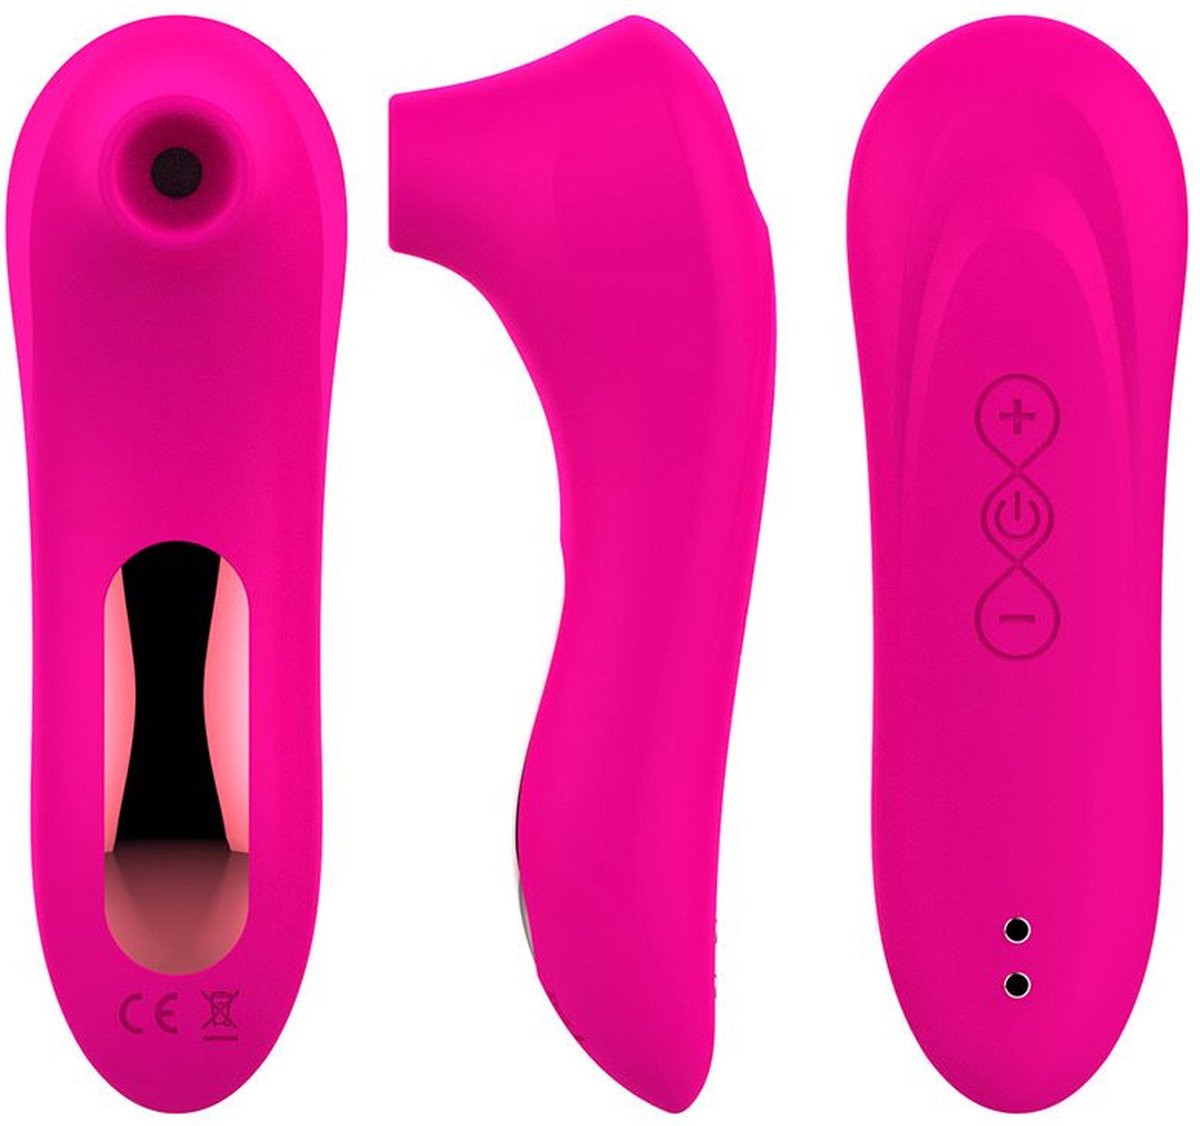 Misow - Roze Luchtdruk (electric pressure sucking massager) Vibrator voor Vrouwen - Zuigende Clitoris Stimulator - Dildo - Sex Toys - Sexspeeltjes Voor Koppels - sex toys voor vrouwen - Erotiek